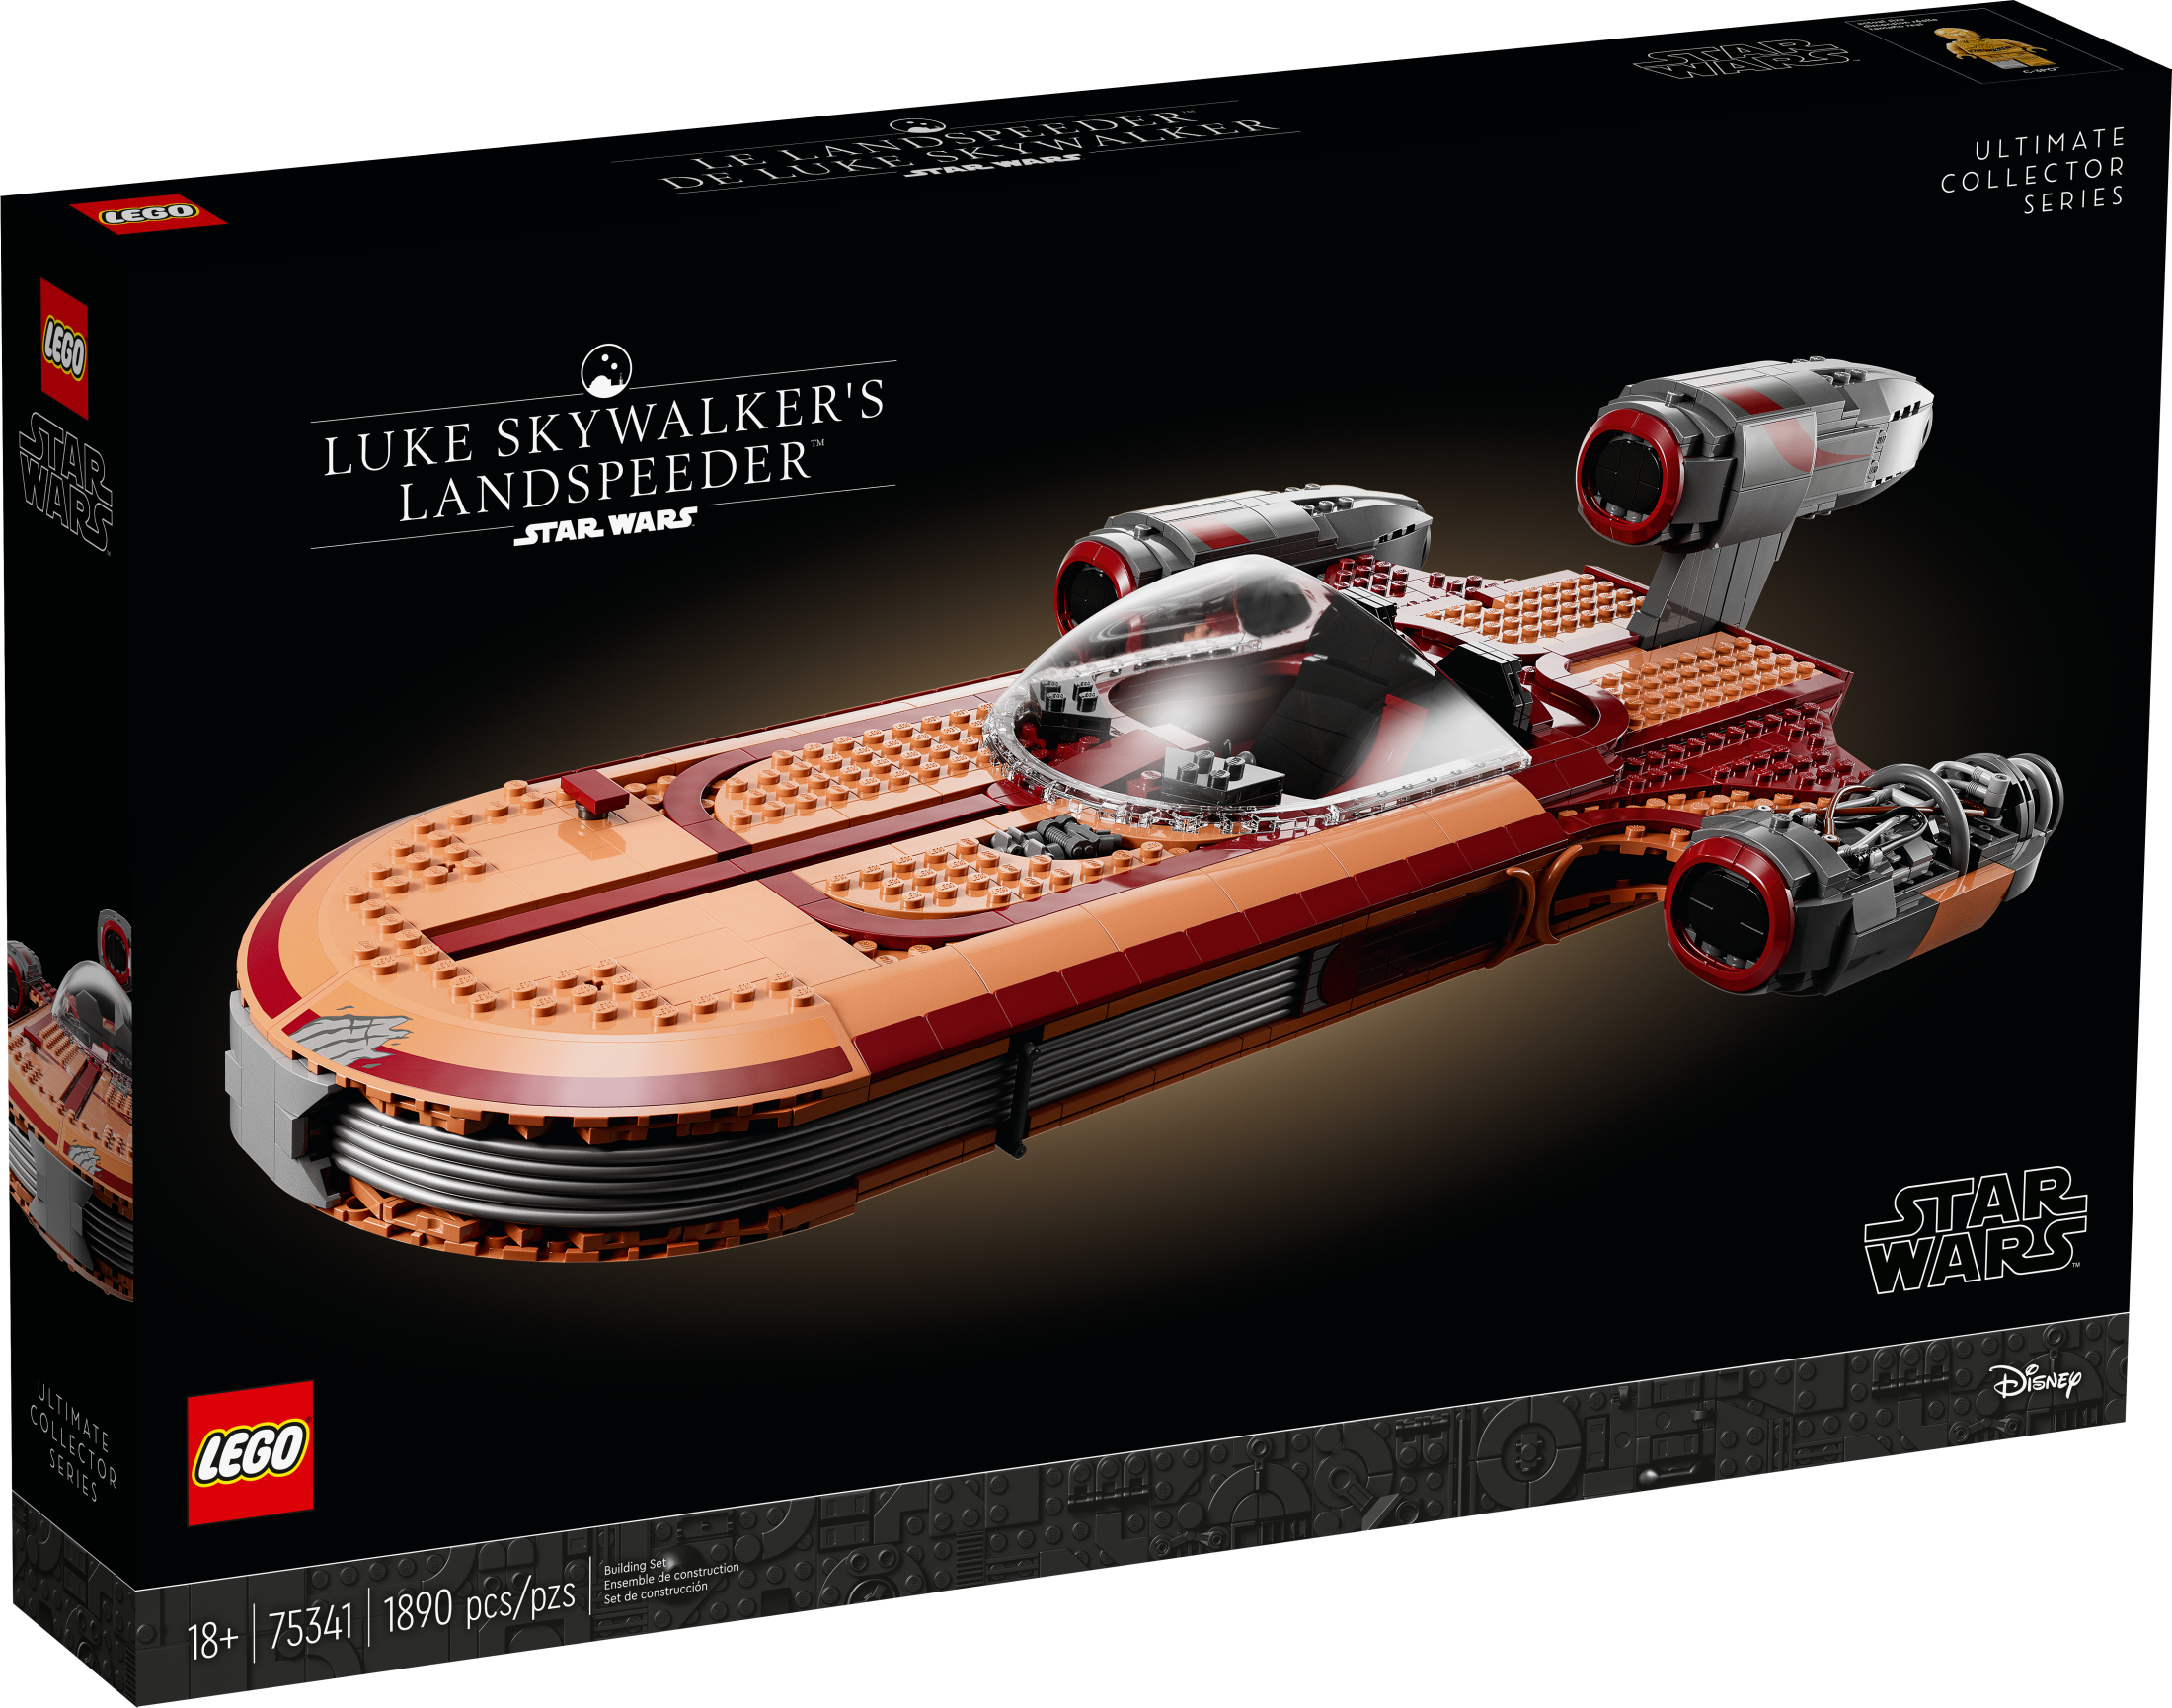 LEGO Star Wars Luke Skywalker's Landspeeder 75341, Ultimate Collector Series Star Wars Building Kit for Adults, Includes Luke Skywalker Lightsaber and C-3PO Mini Figure, Gift Idea for Star Wars Fans - image 3 of 8